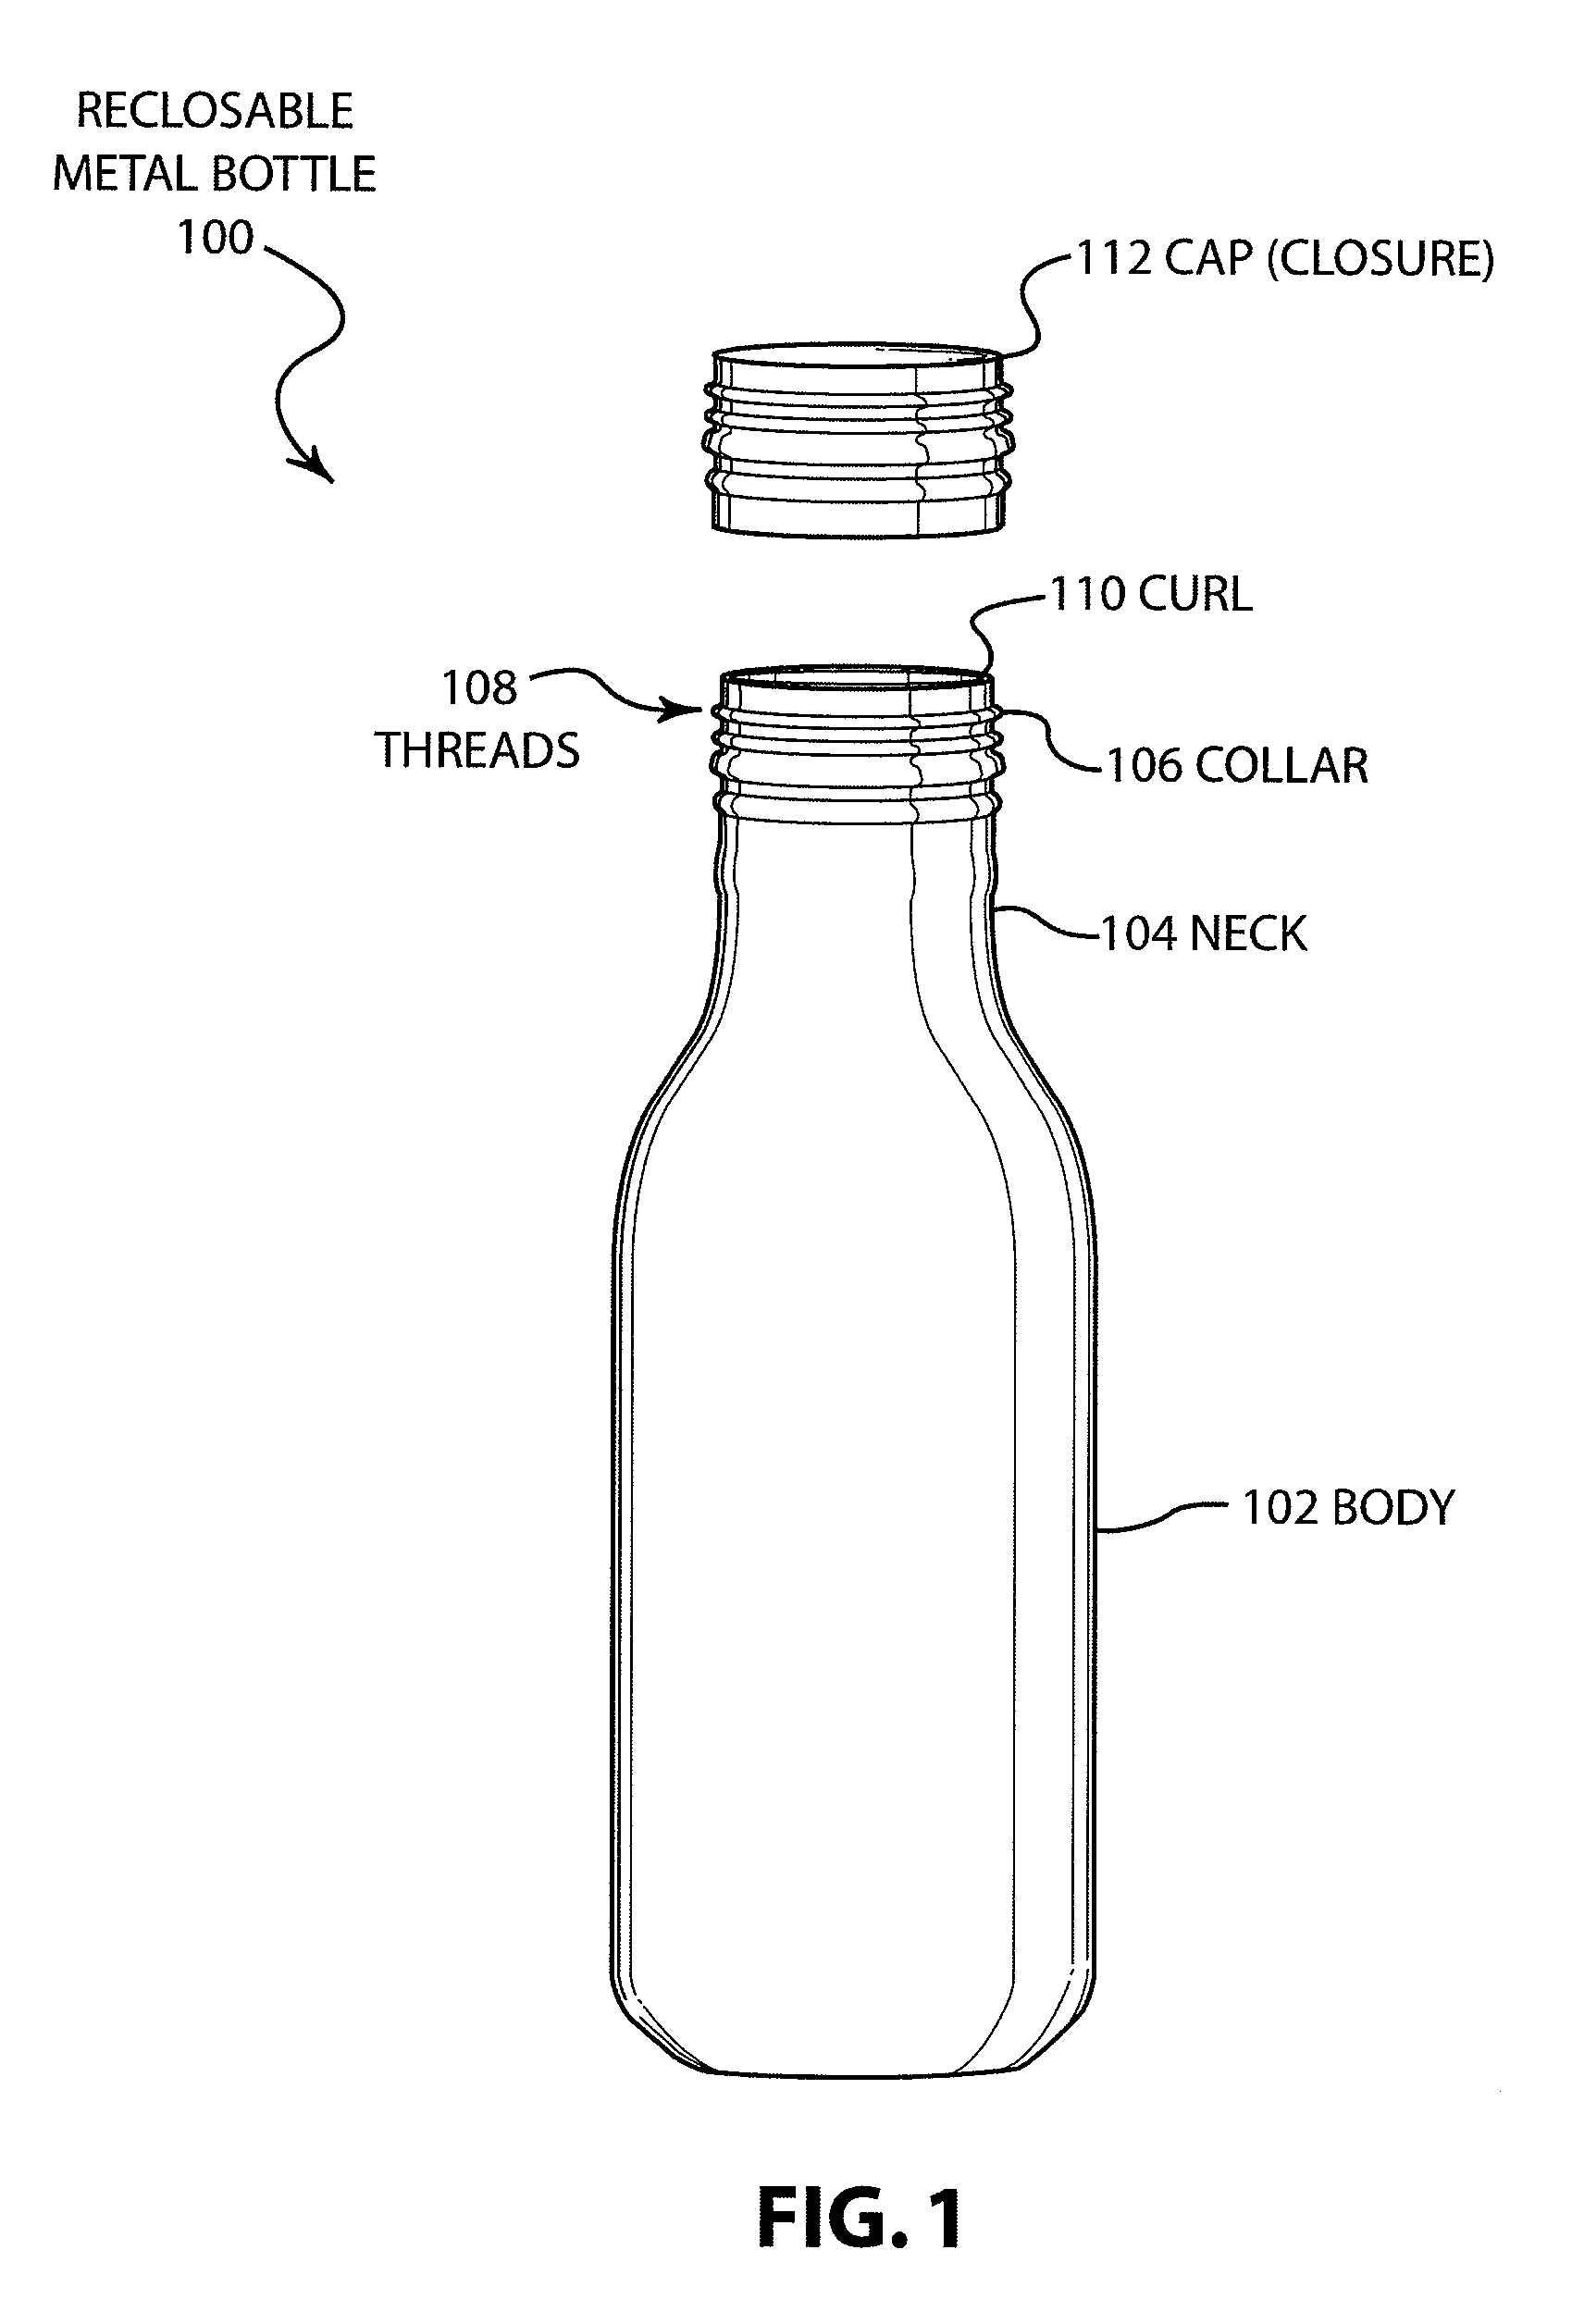 Reclosable metal bottle